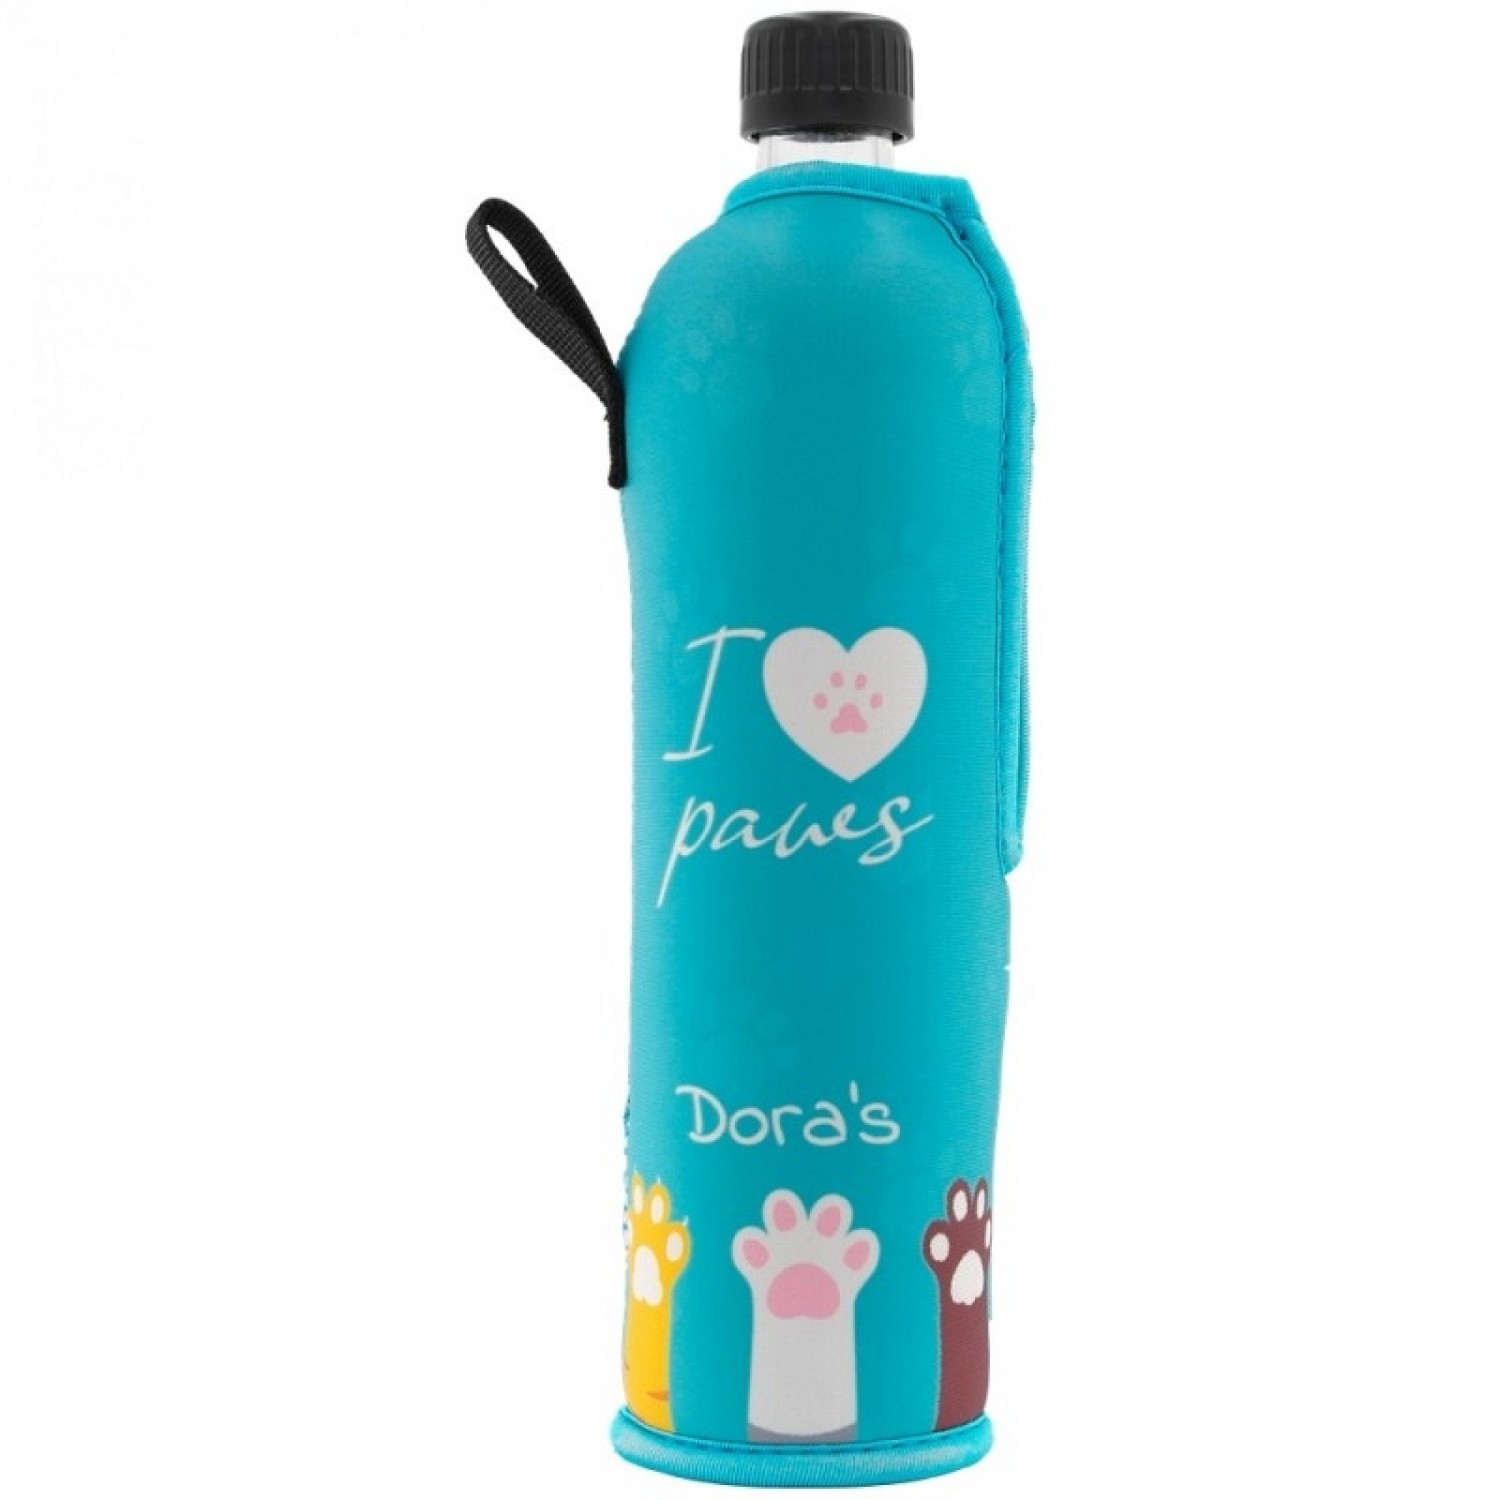 Dora‘s reusable glass bottle with »I love paws« neoprene sleeve